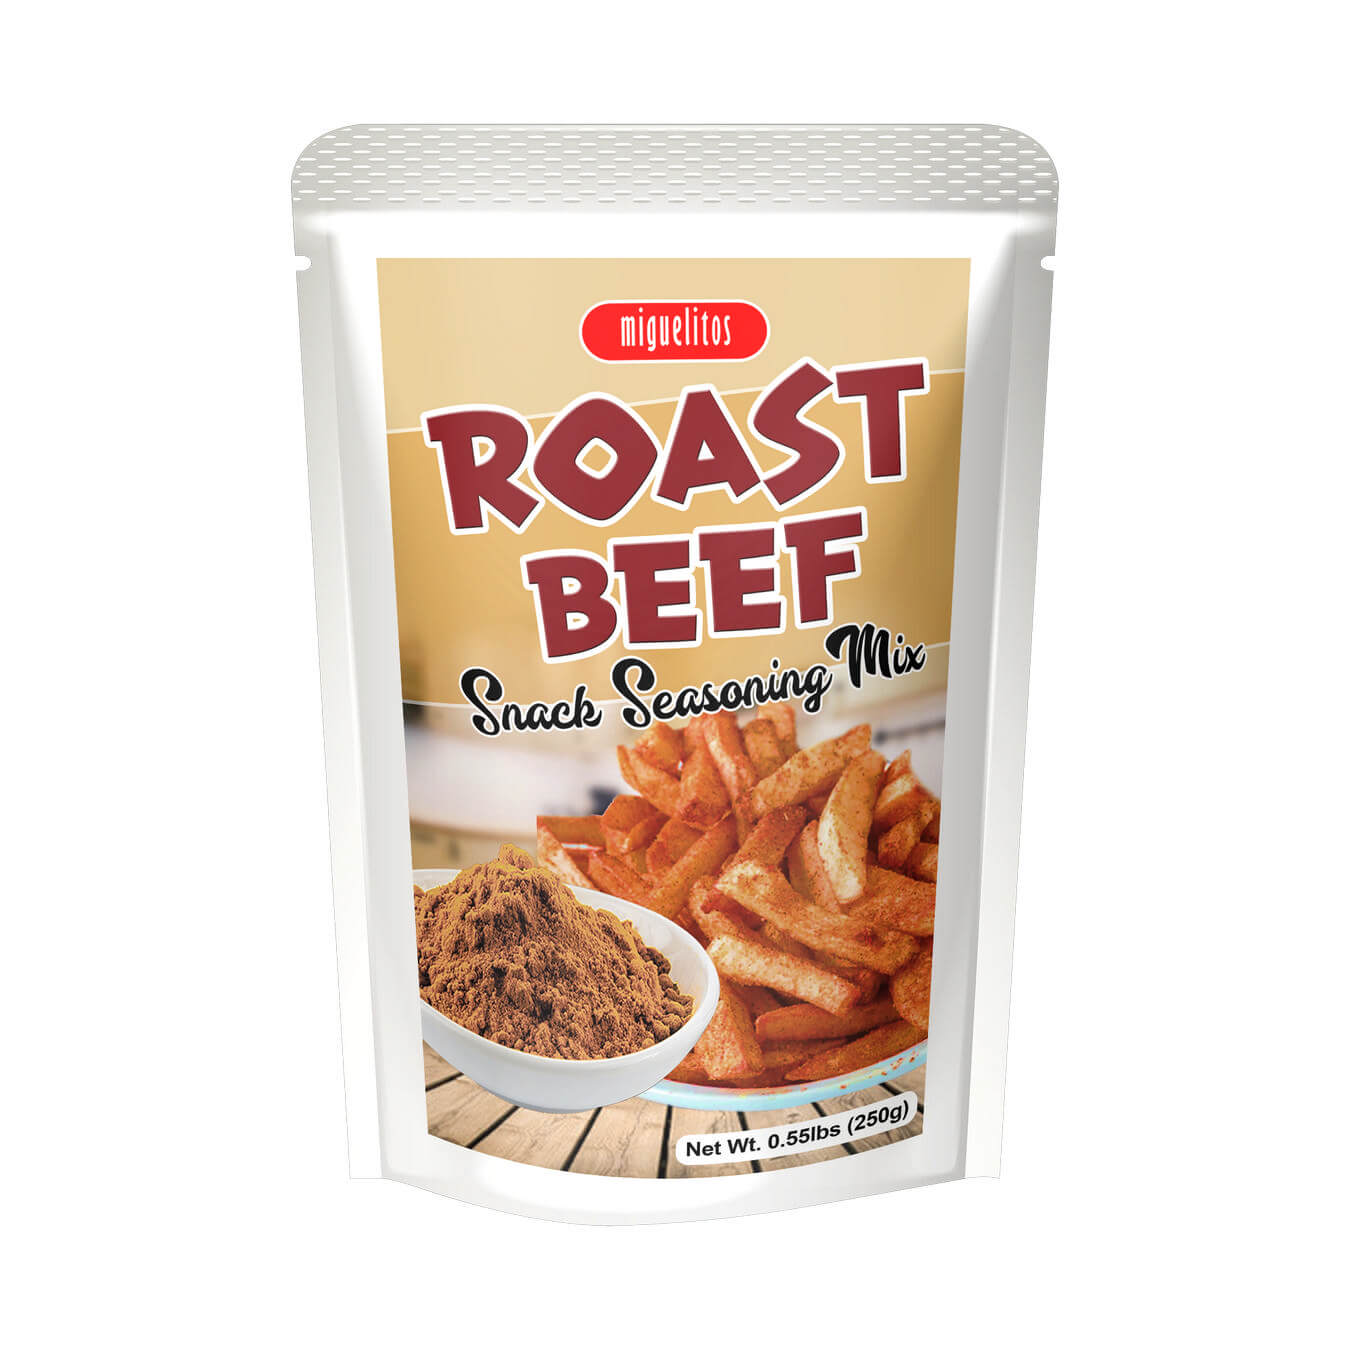 Roast Beef Snack Seasoning